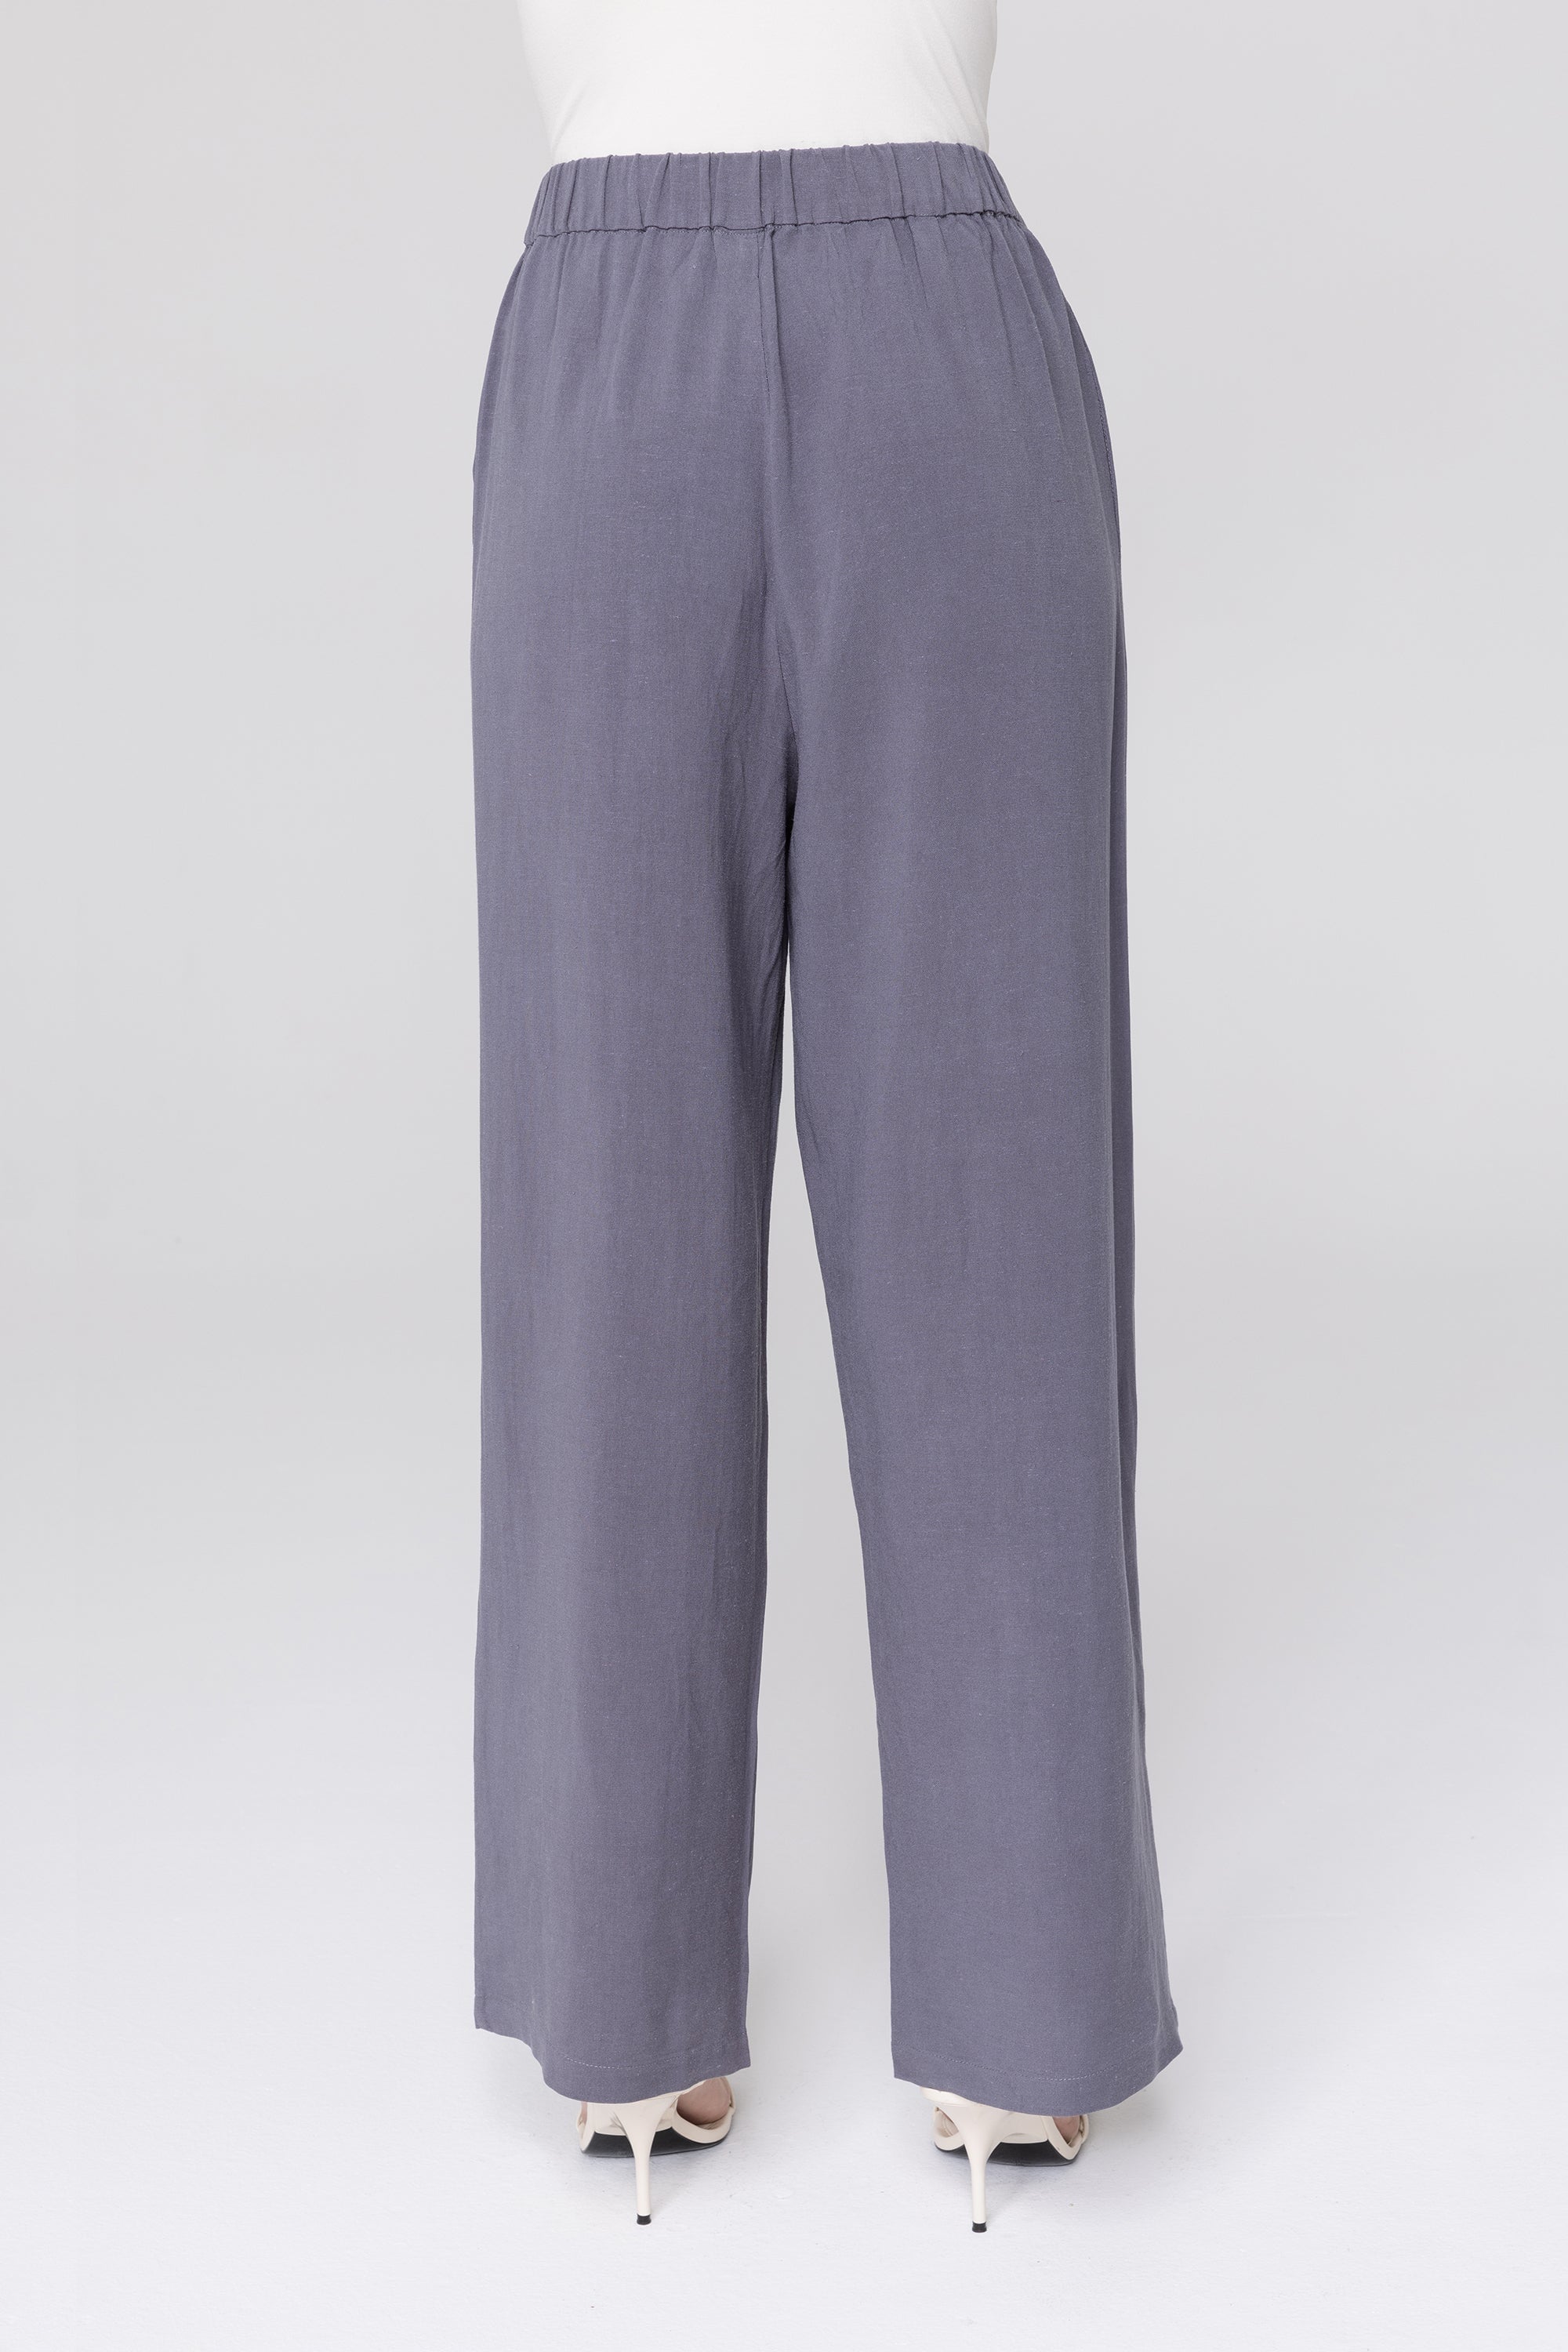 Gemma Linen Wide Leg Pants - Denim Veiled Collection 